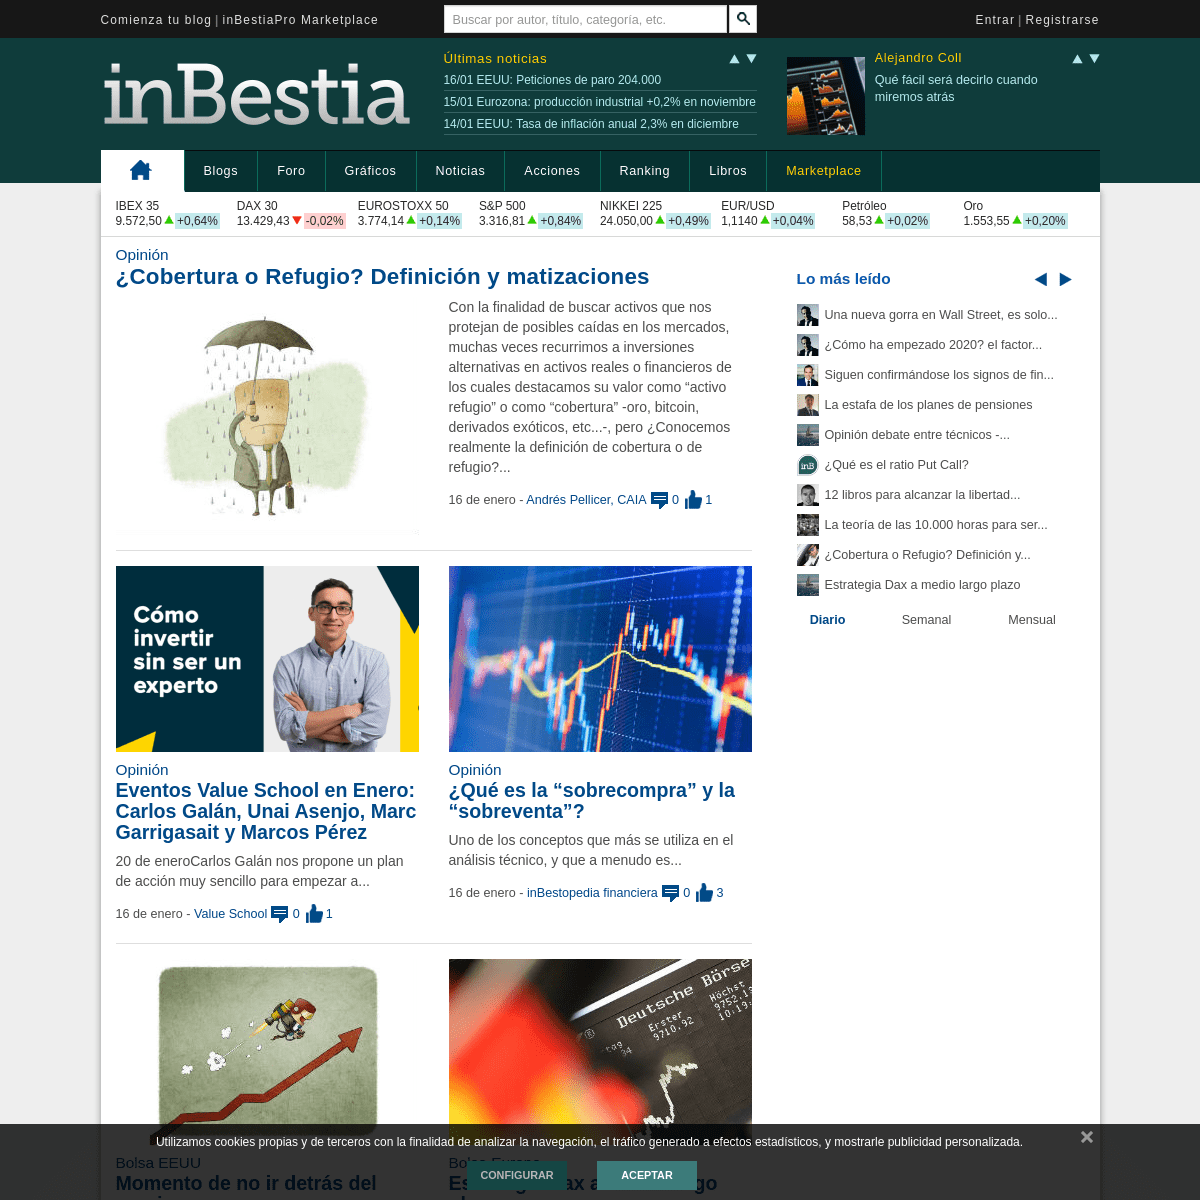 A complete backup of inbestia.com